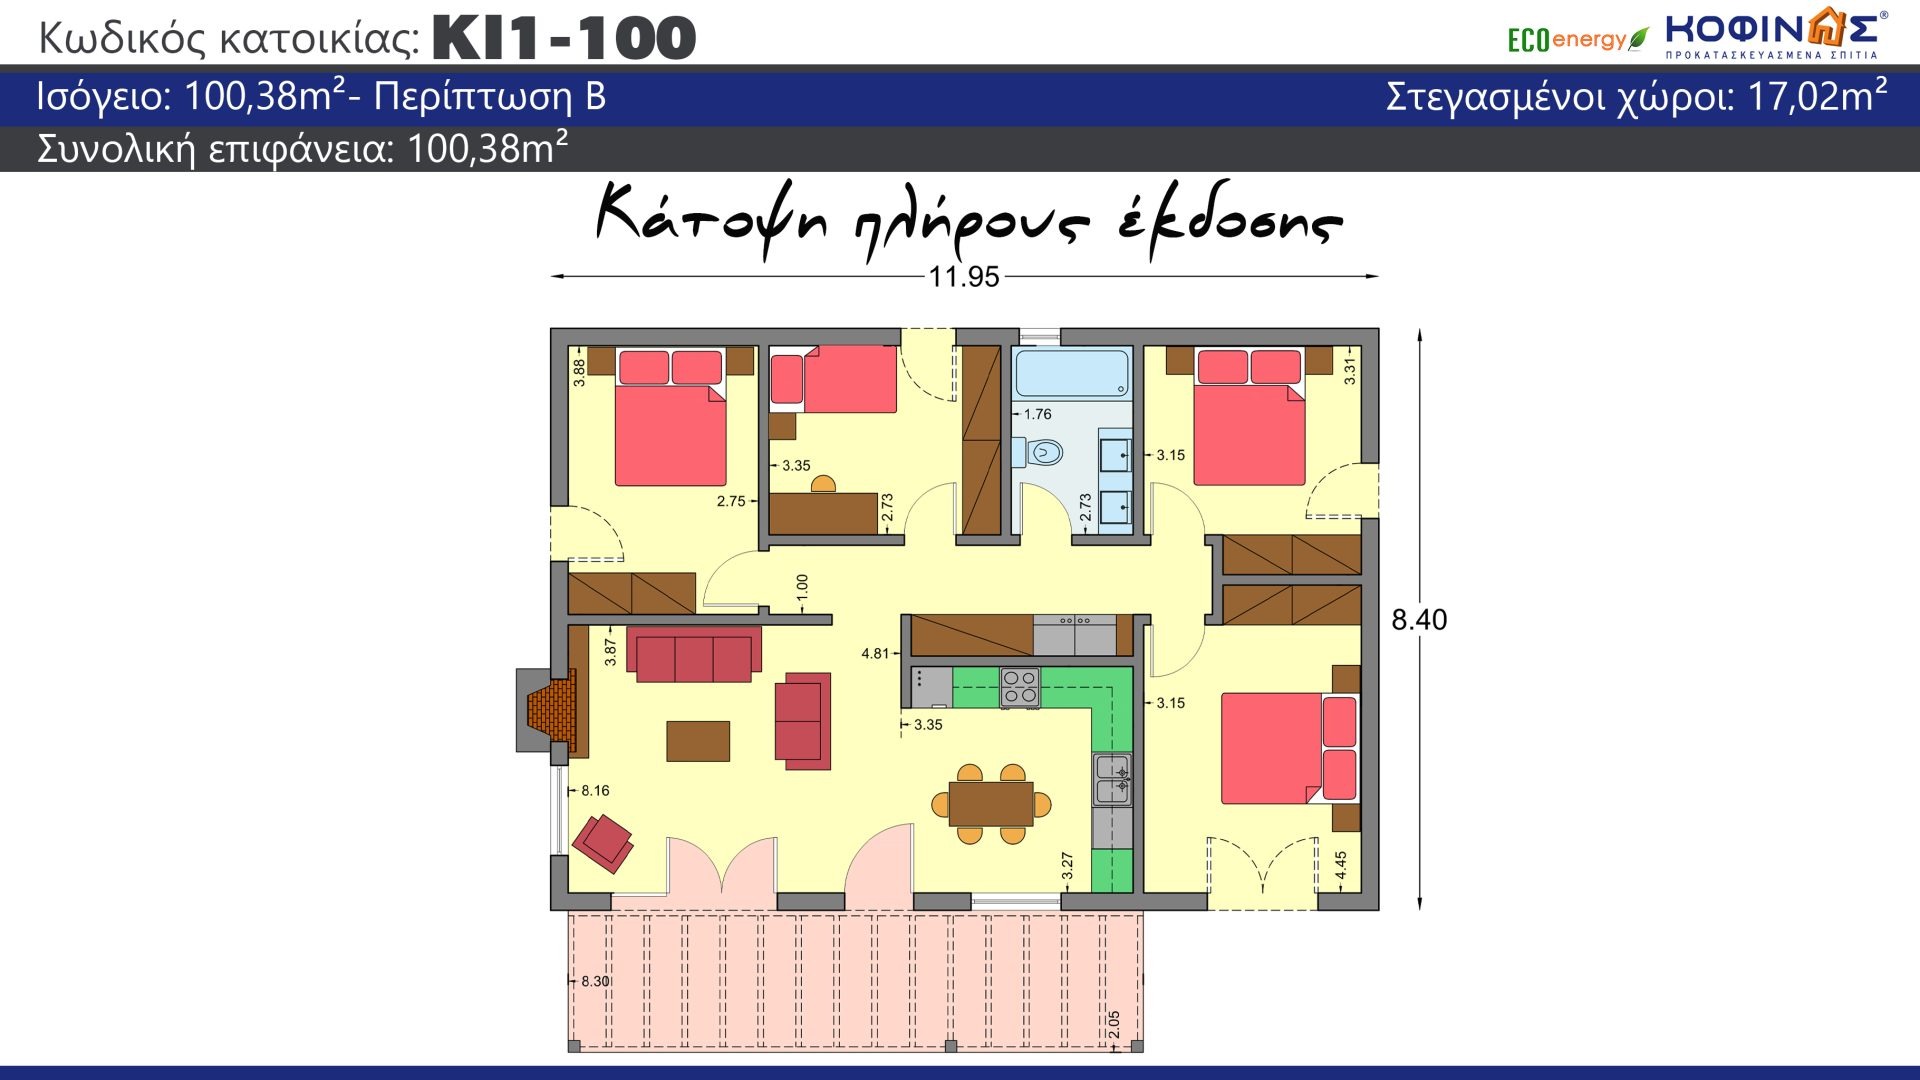 Ισόγεια Κατοικία ΚI1-100 (100,38 τ.μ.),συνολική επιφάνεια στεγασμένων χώρων 17,02τ.μ.